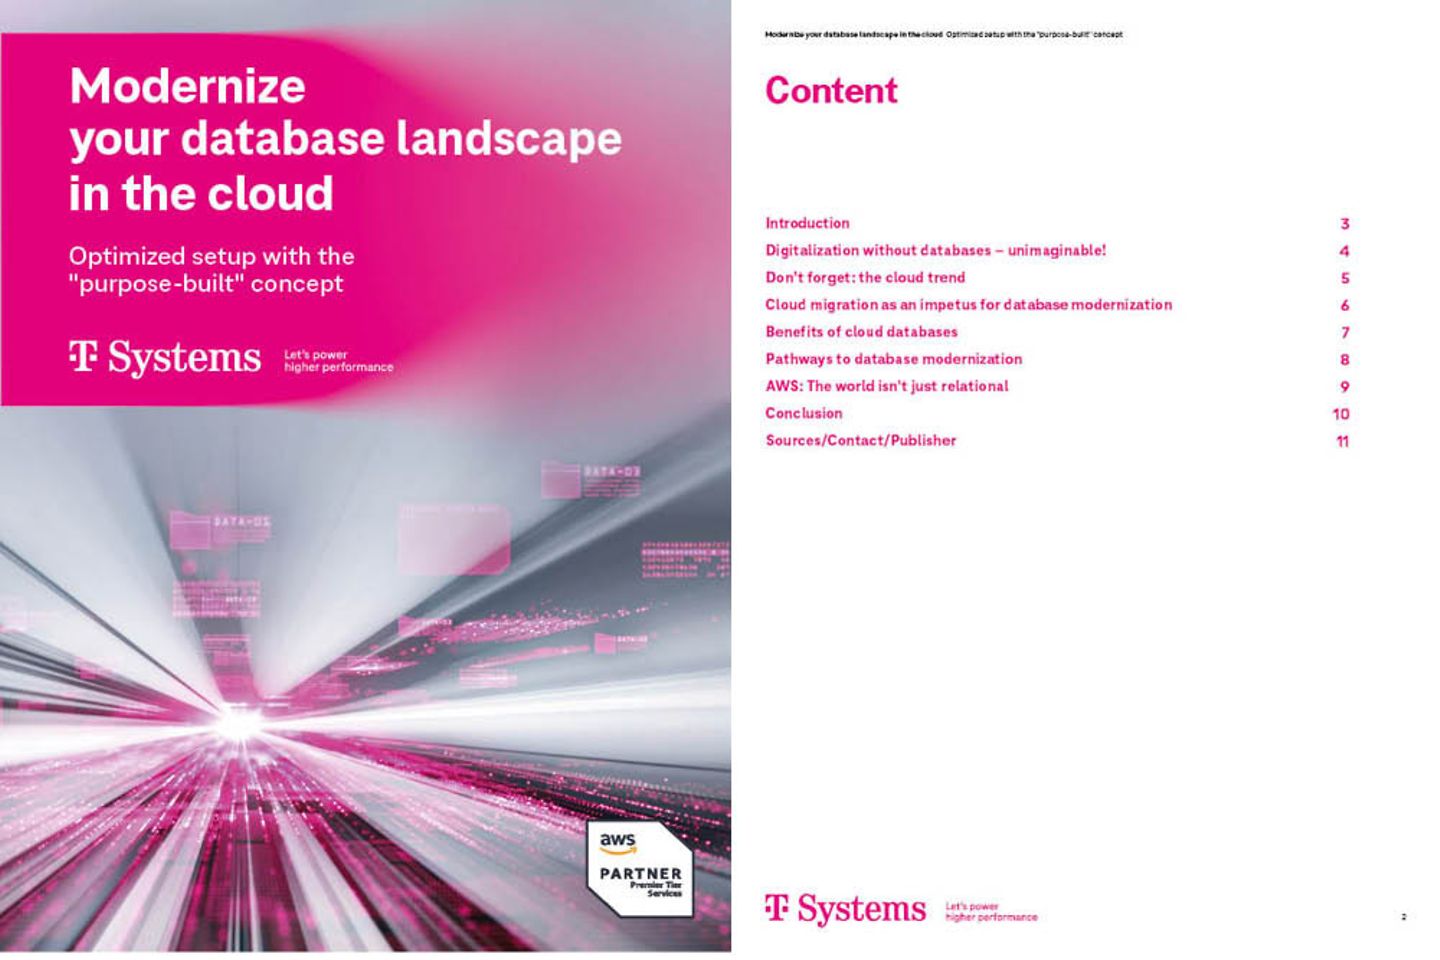 Portada y siguiente página del whitepaper como captura: Moderniza tu entorno de bases de datos en el cloud 